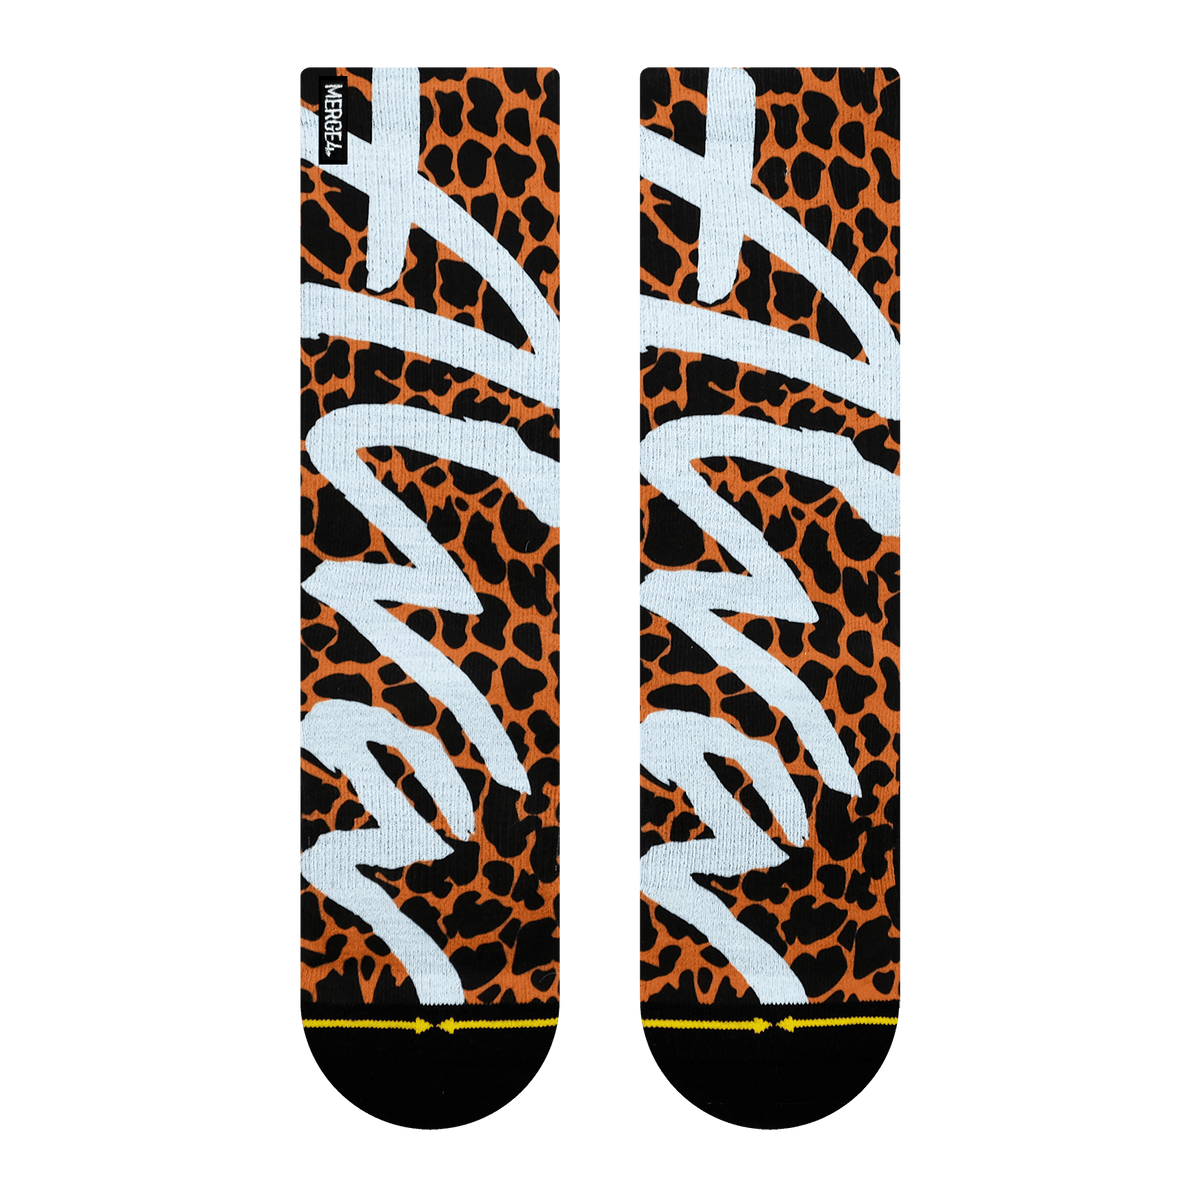 Merge4 x Tony Alva Cheetah Crew Socks